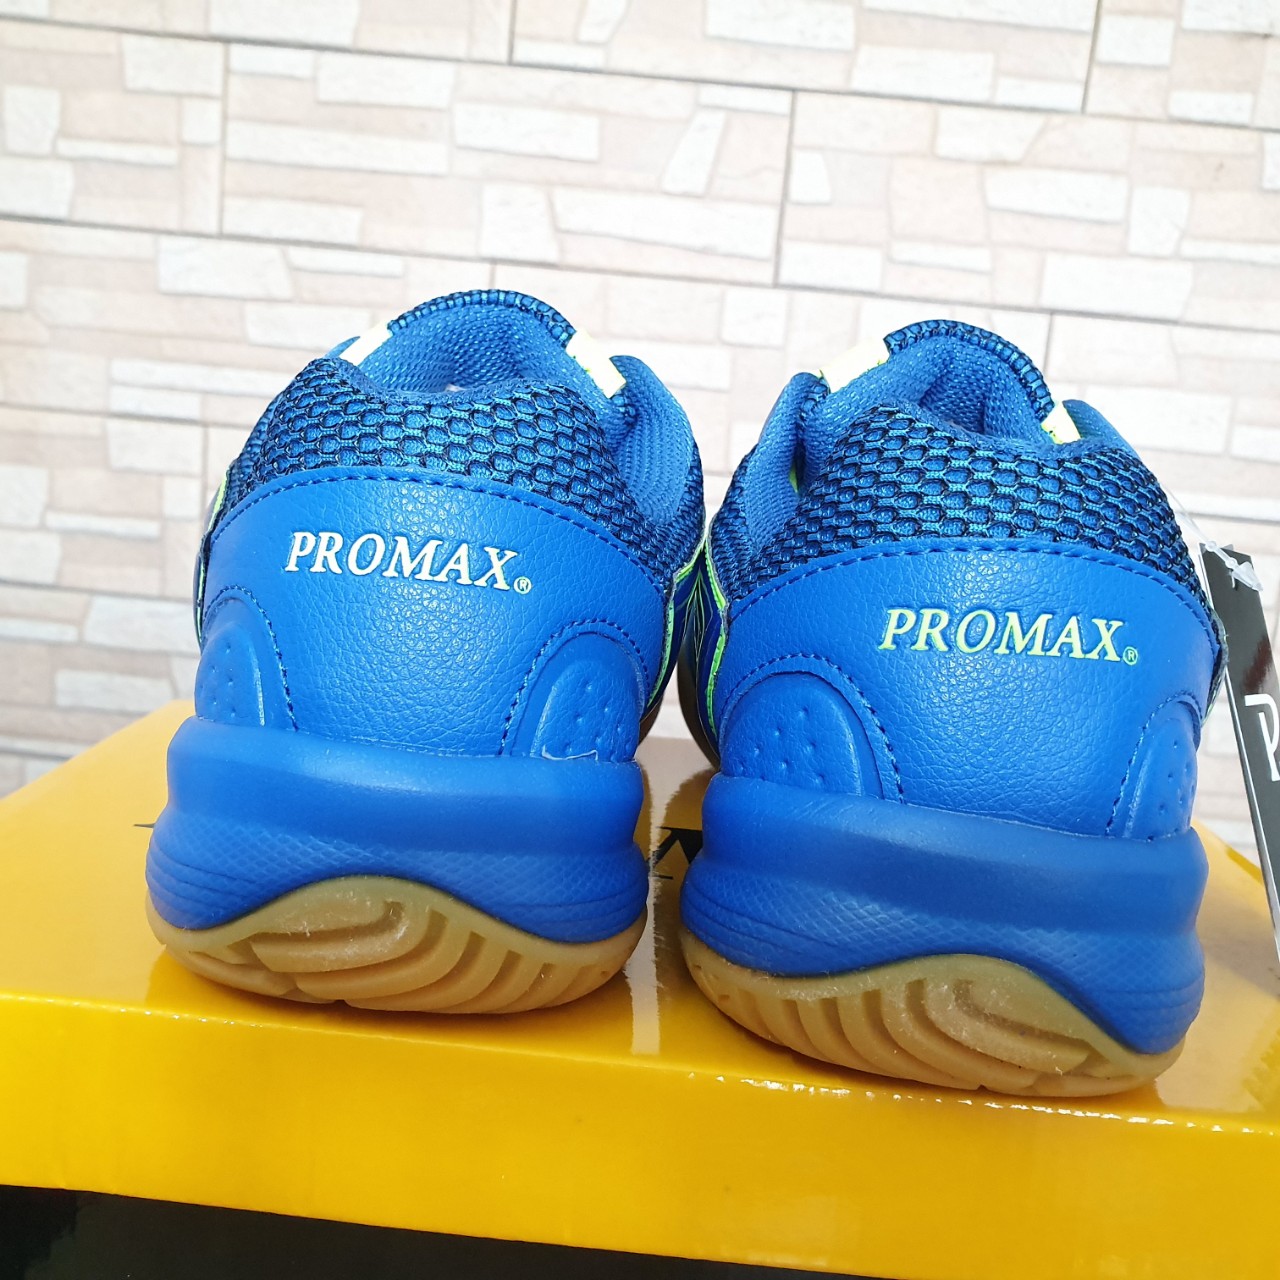 Giày bóng chuyền nam nữ Promax PR-19003 màu xanh dương, đế kép